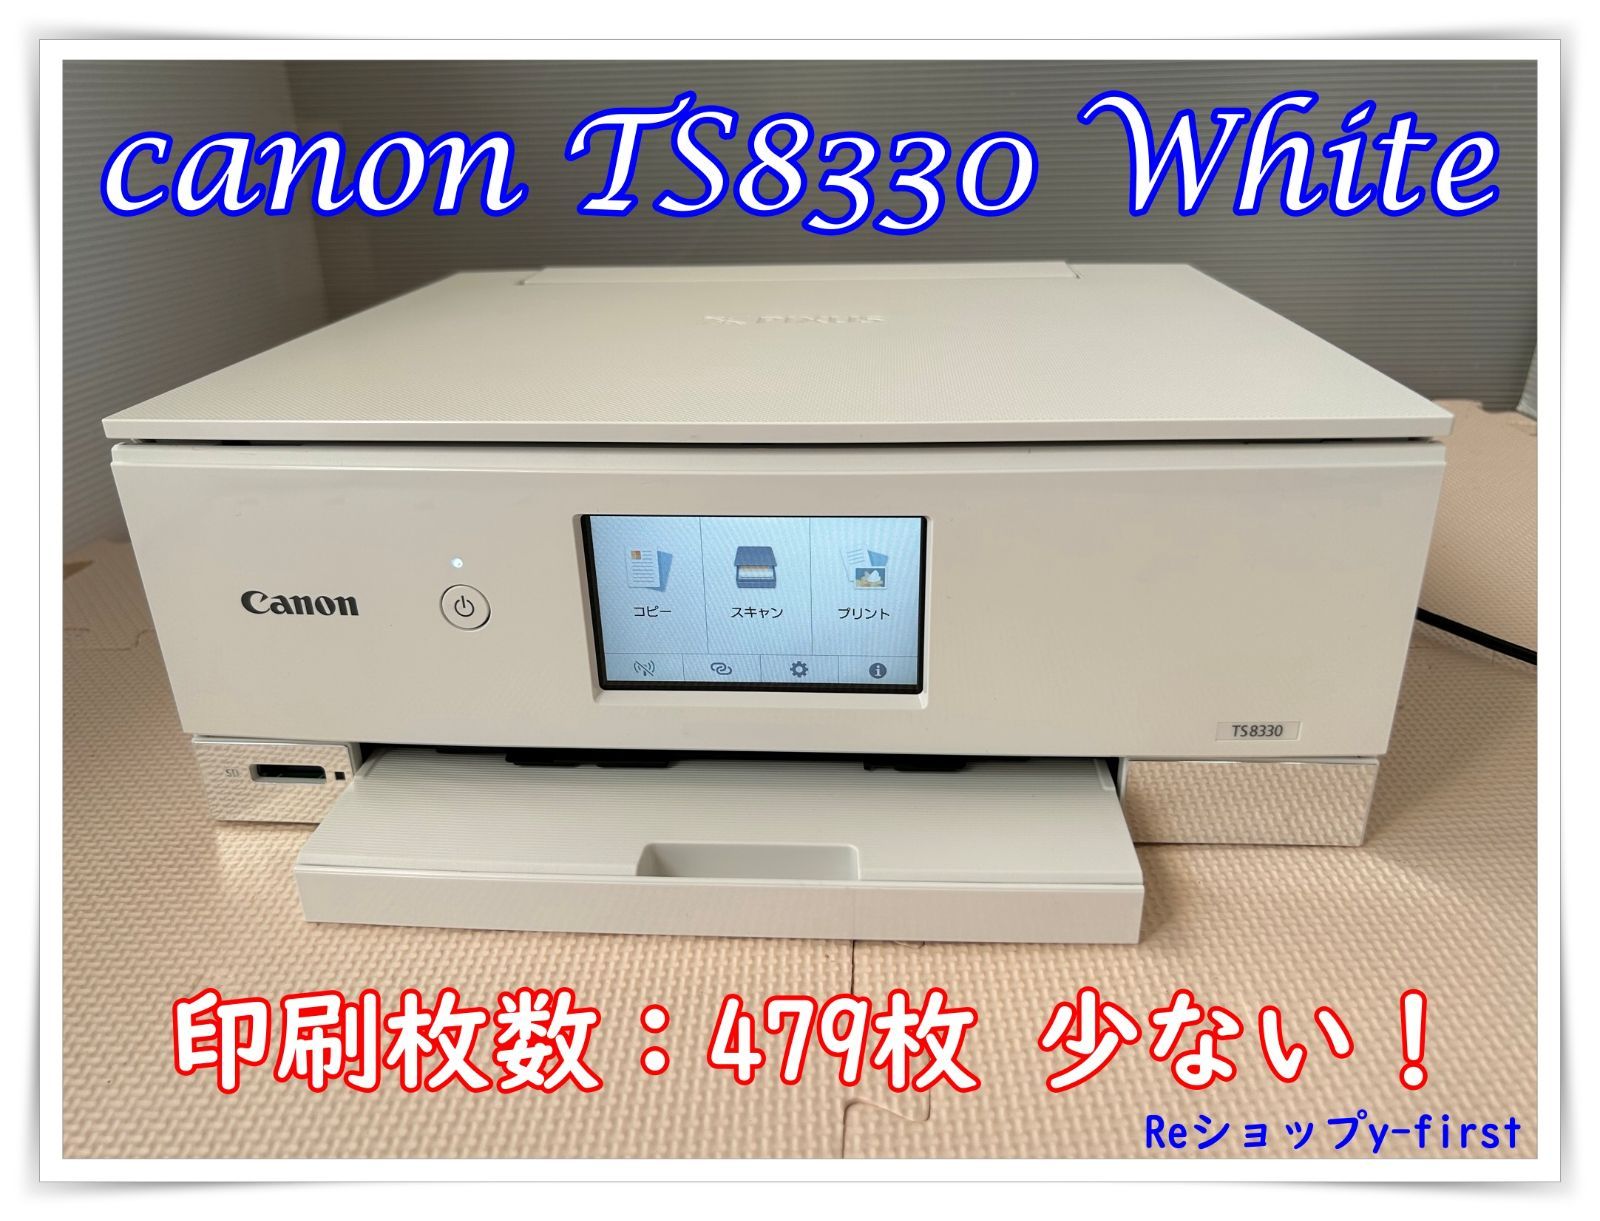 M35080 canonキャノン プリンター TS8330 白 - Reショップy-first